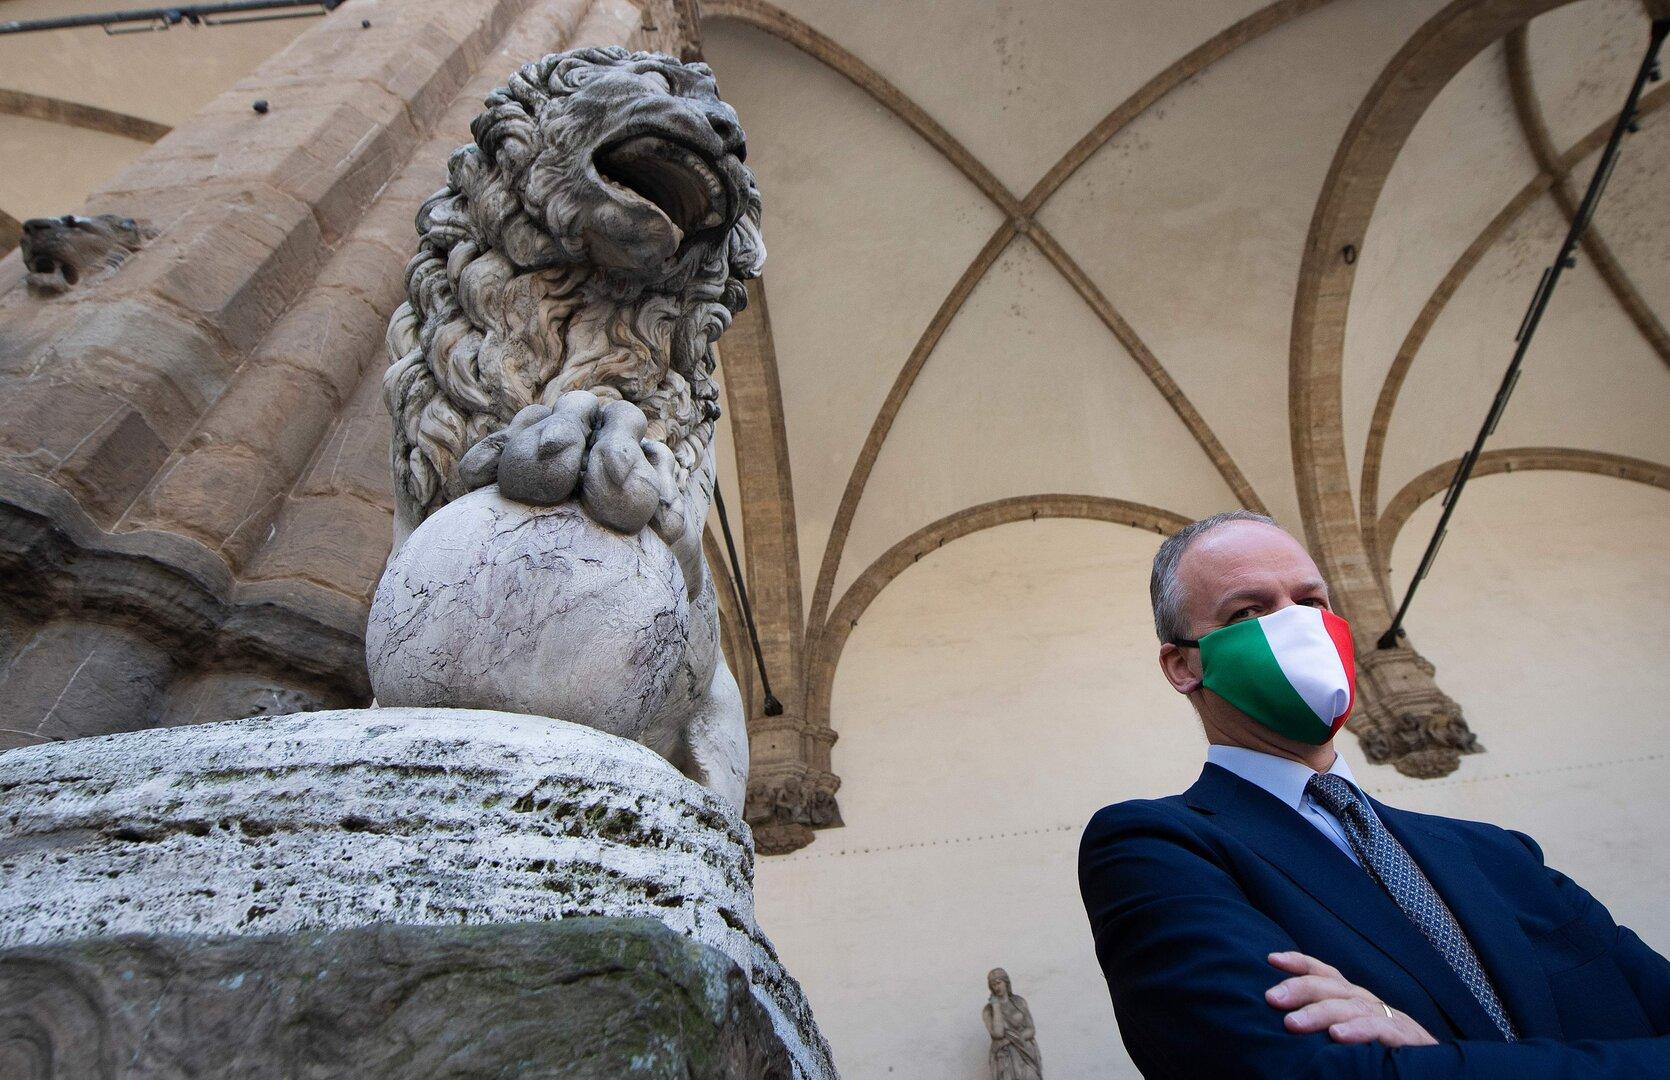 Museumschef Eike Schmidt will Bürgermeister von Florenz werden